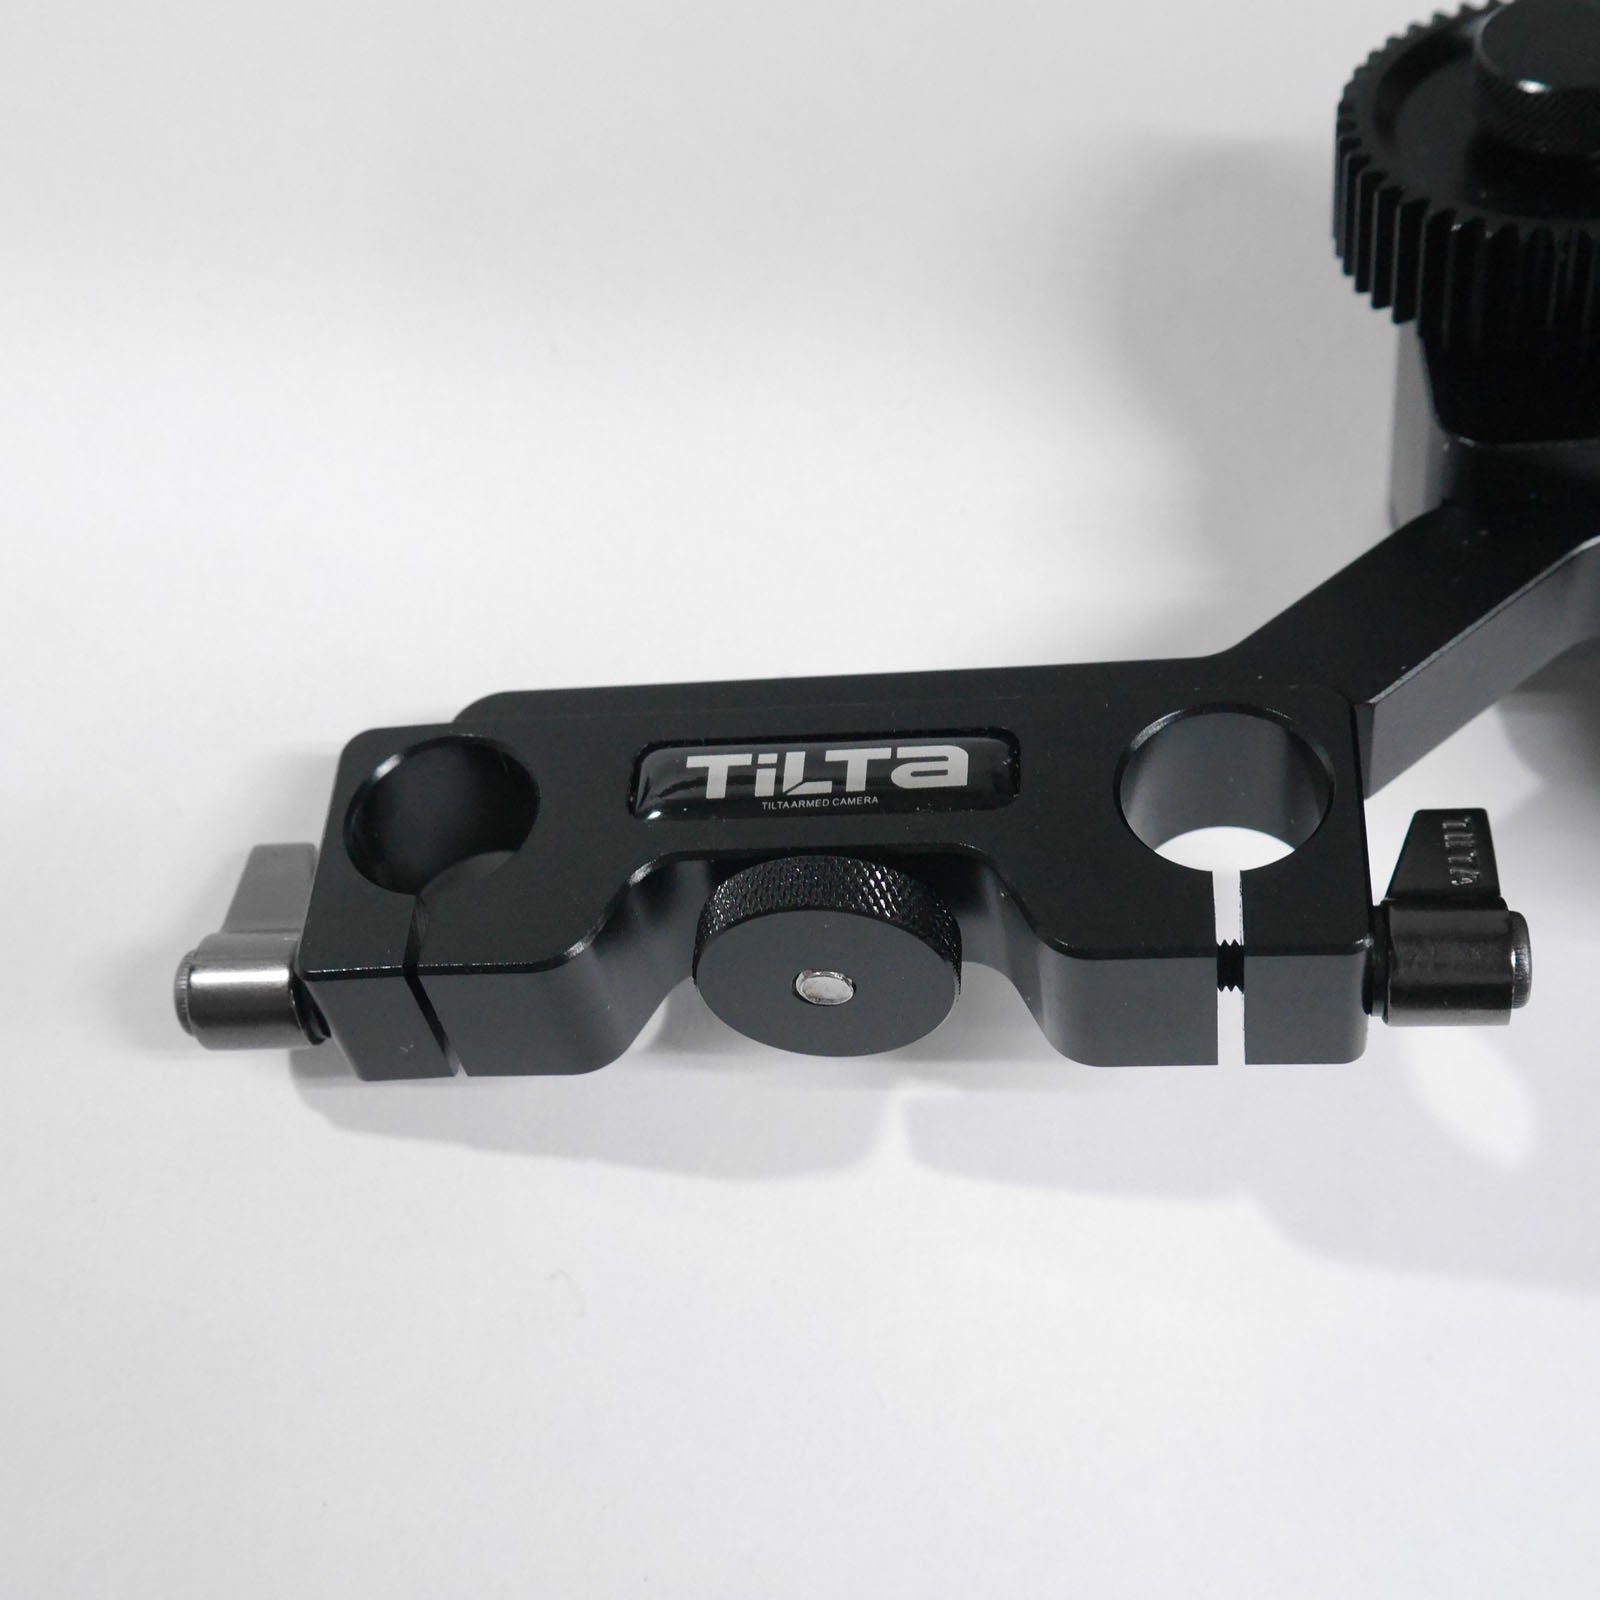 TILTA(ティルタ) BASIC KIT FOR DSLR SBF-450 中古品